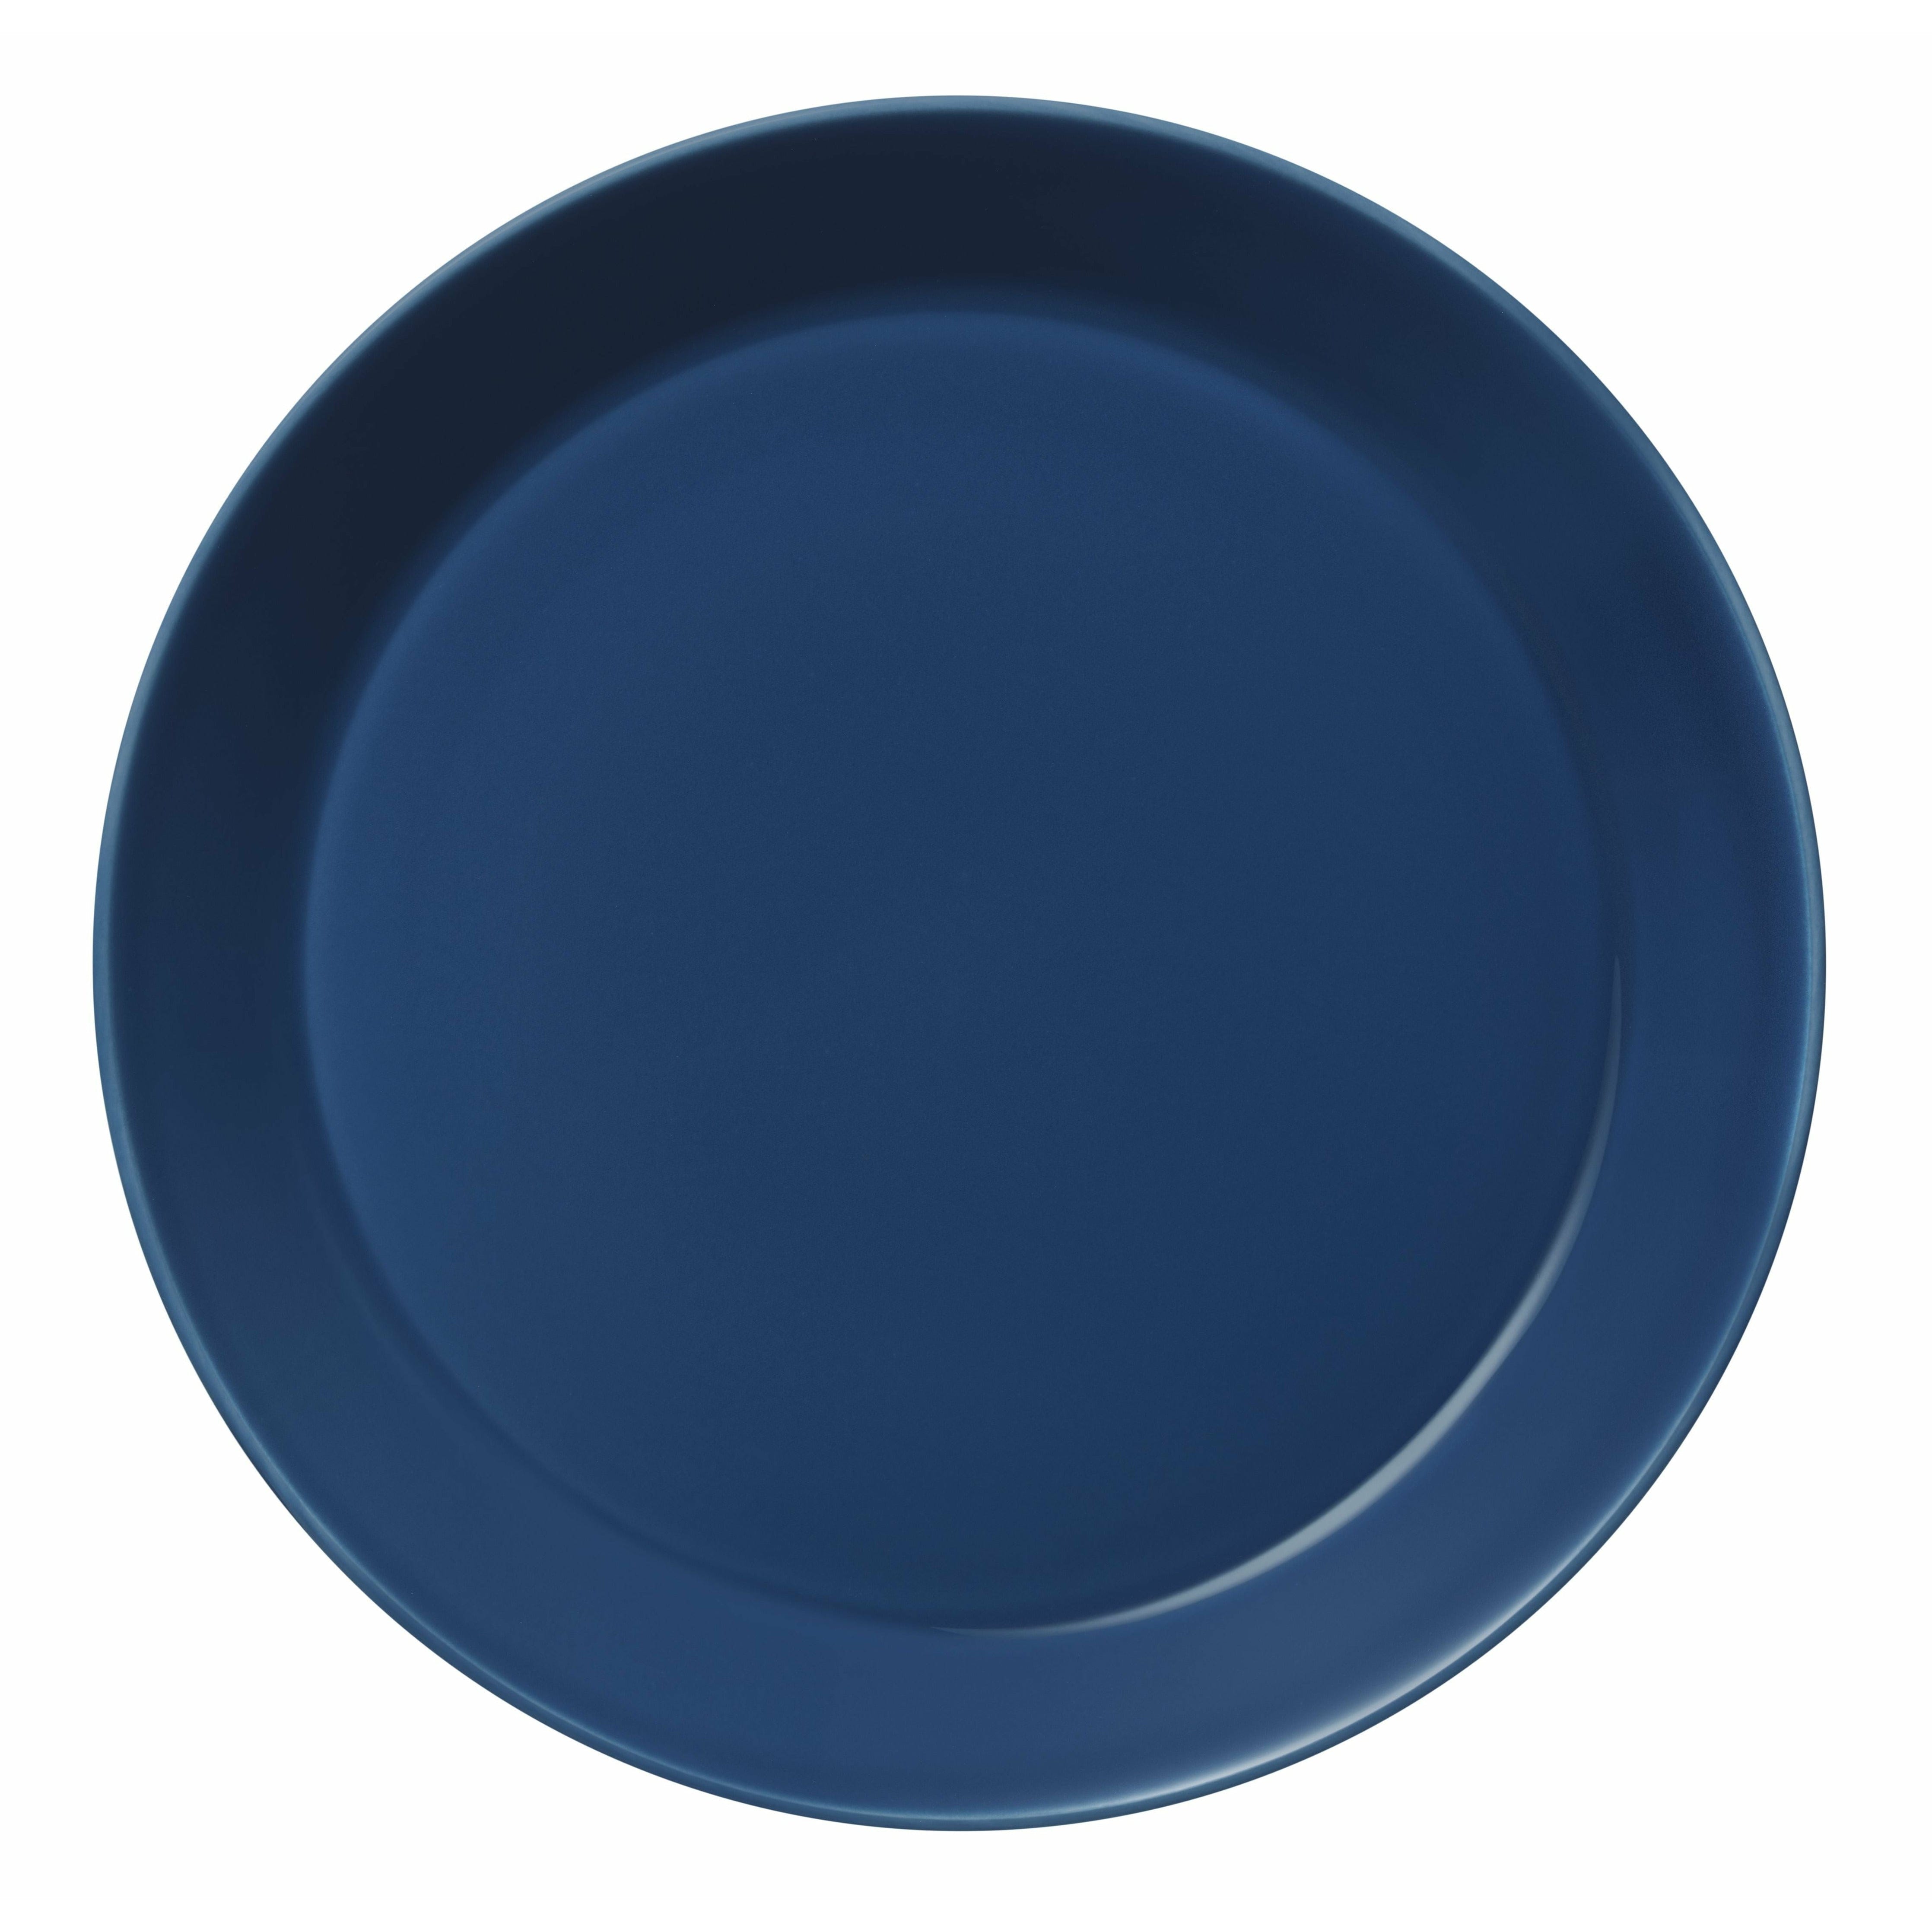 Iittala Teema Plate 26cm, azul vintage